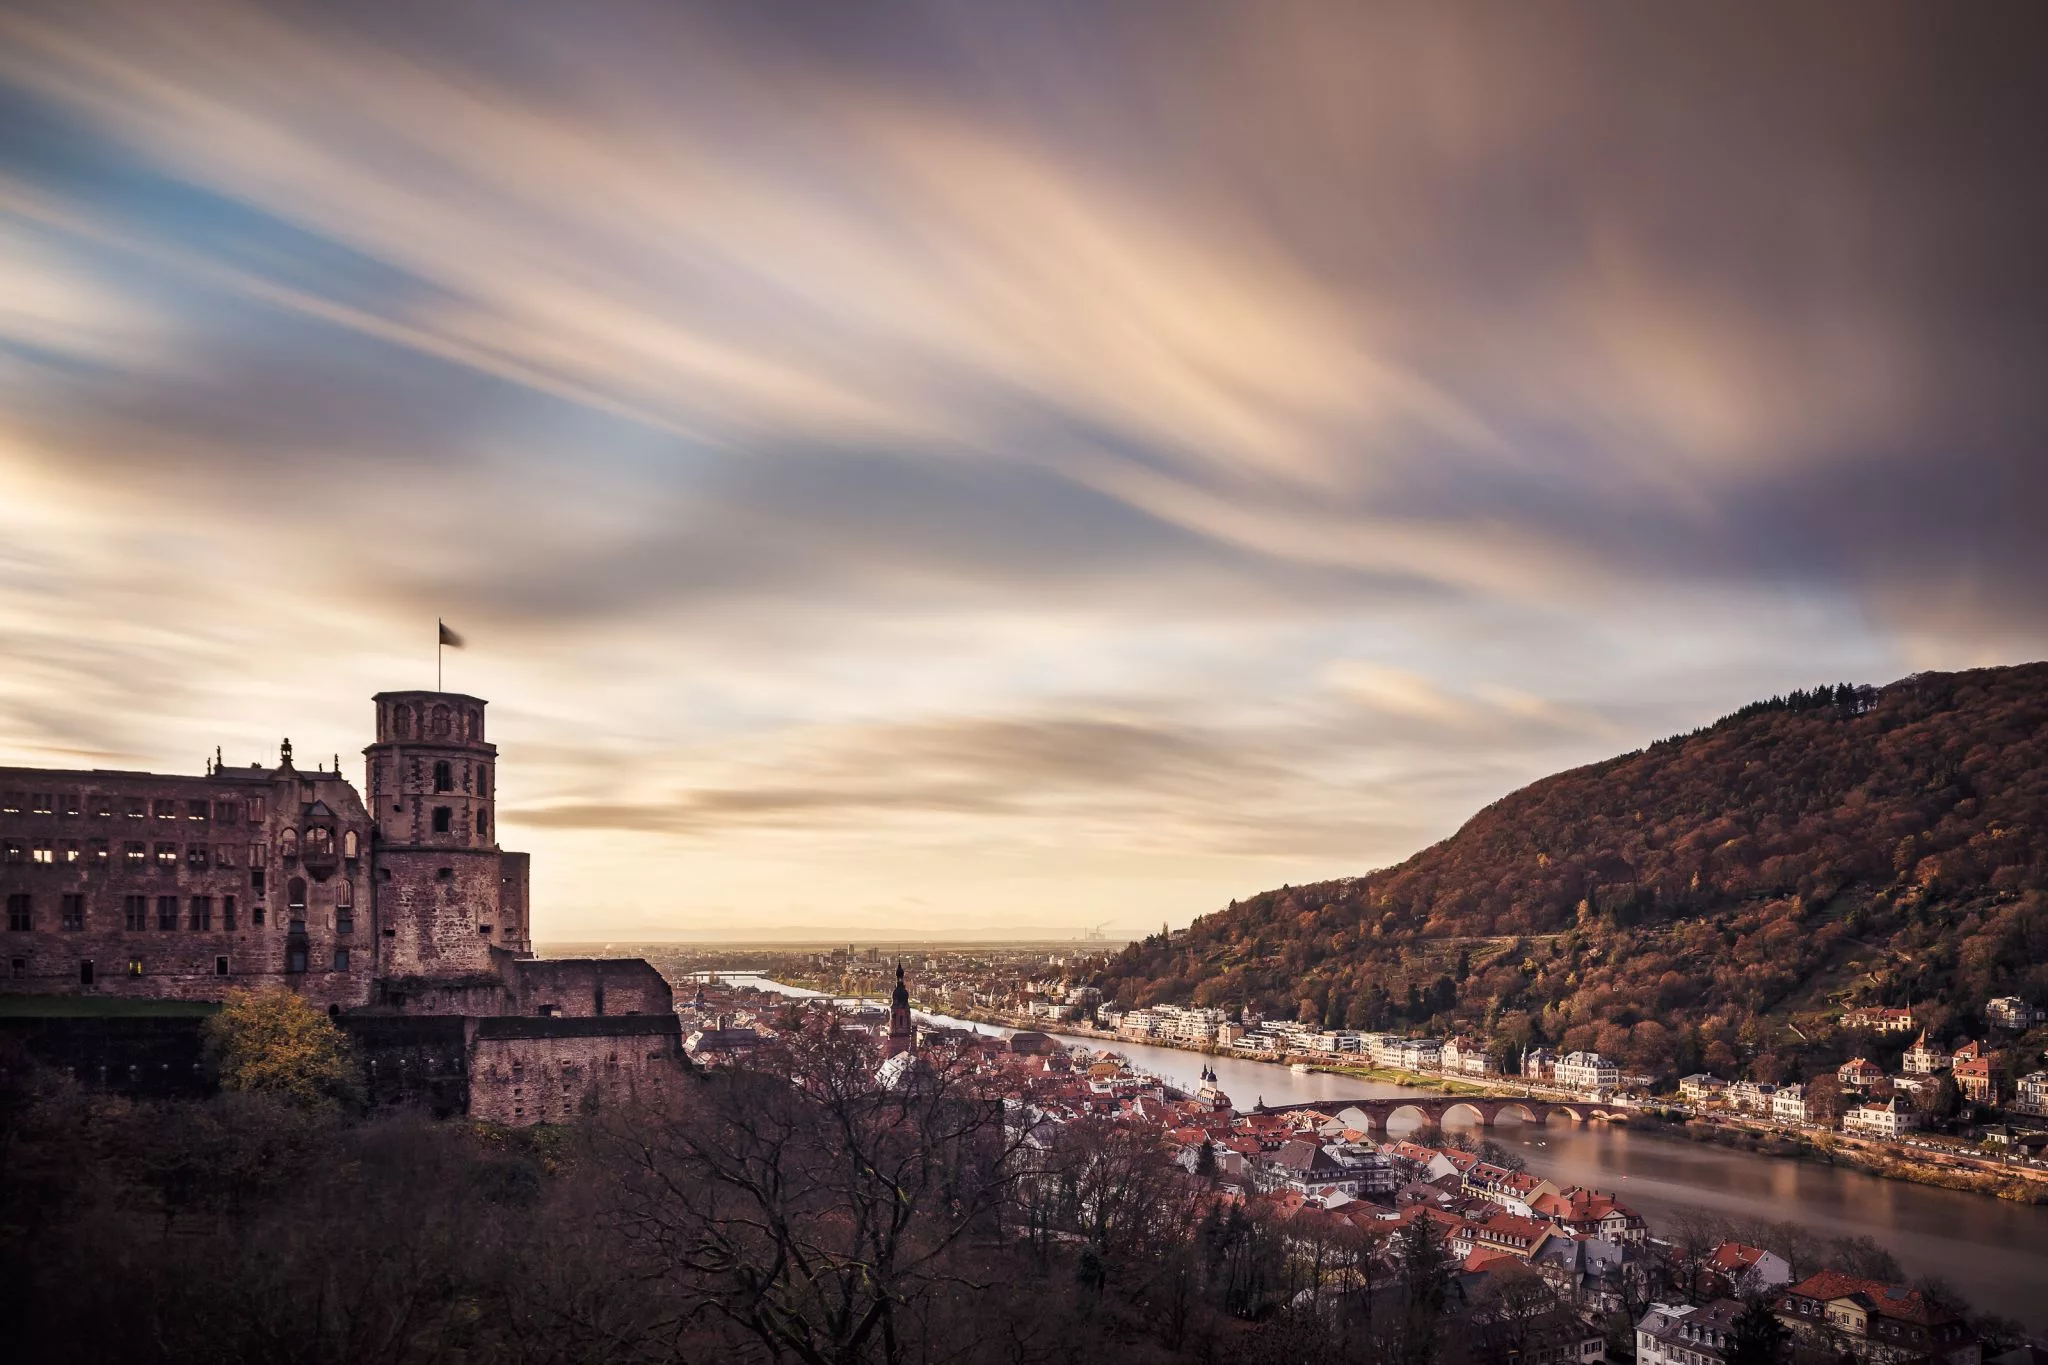 Scheffelterrasse, Heidelberg, Germany